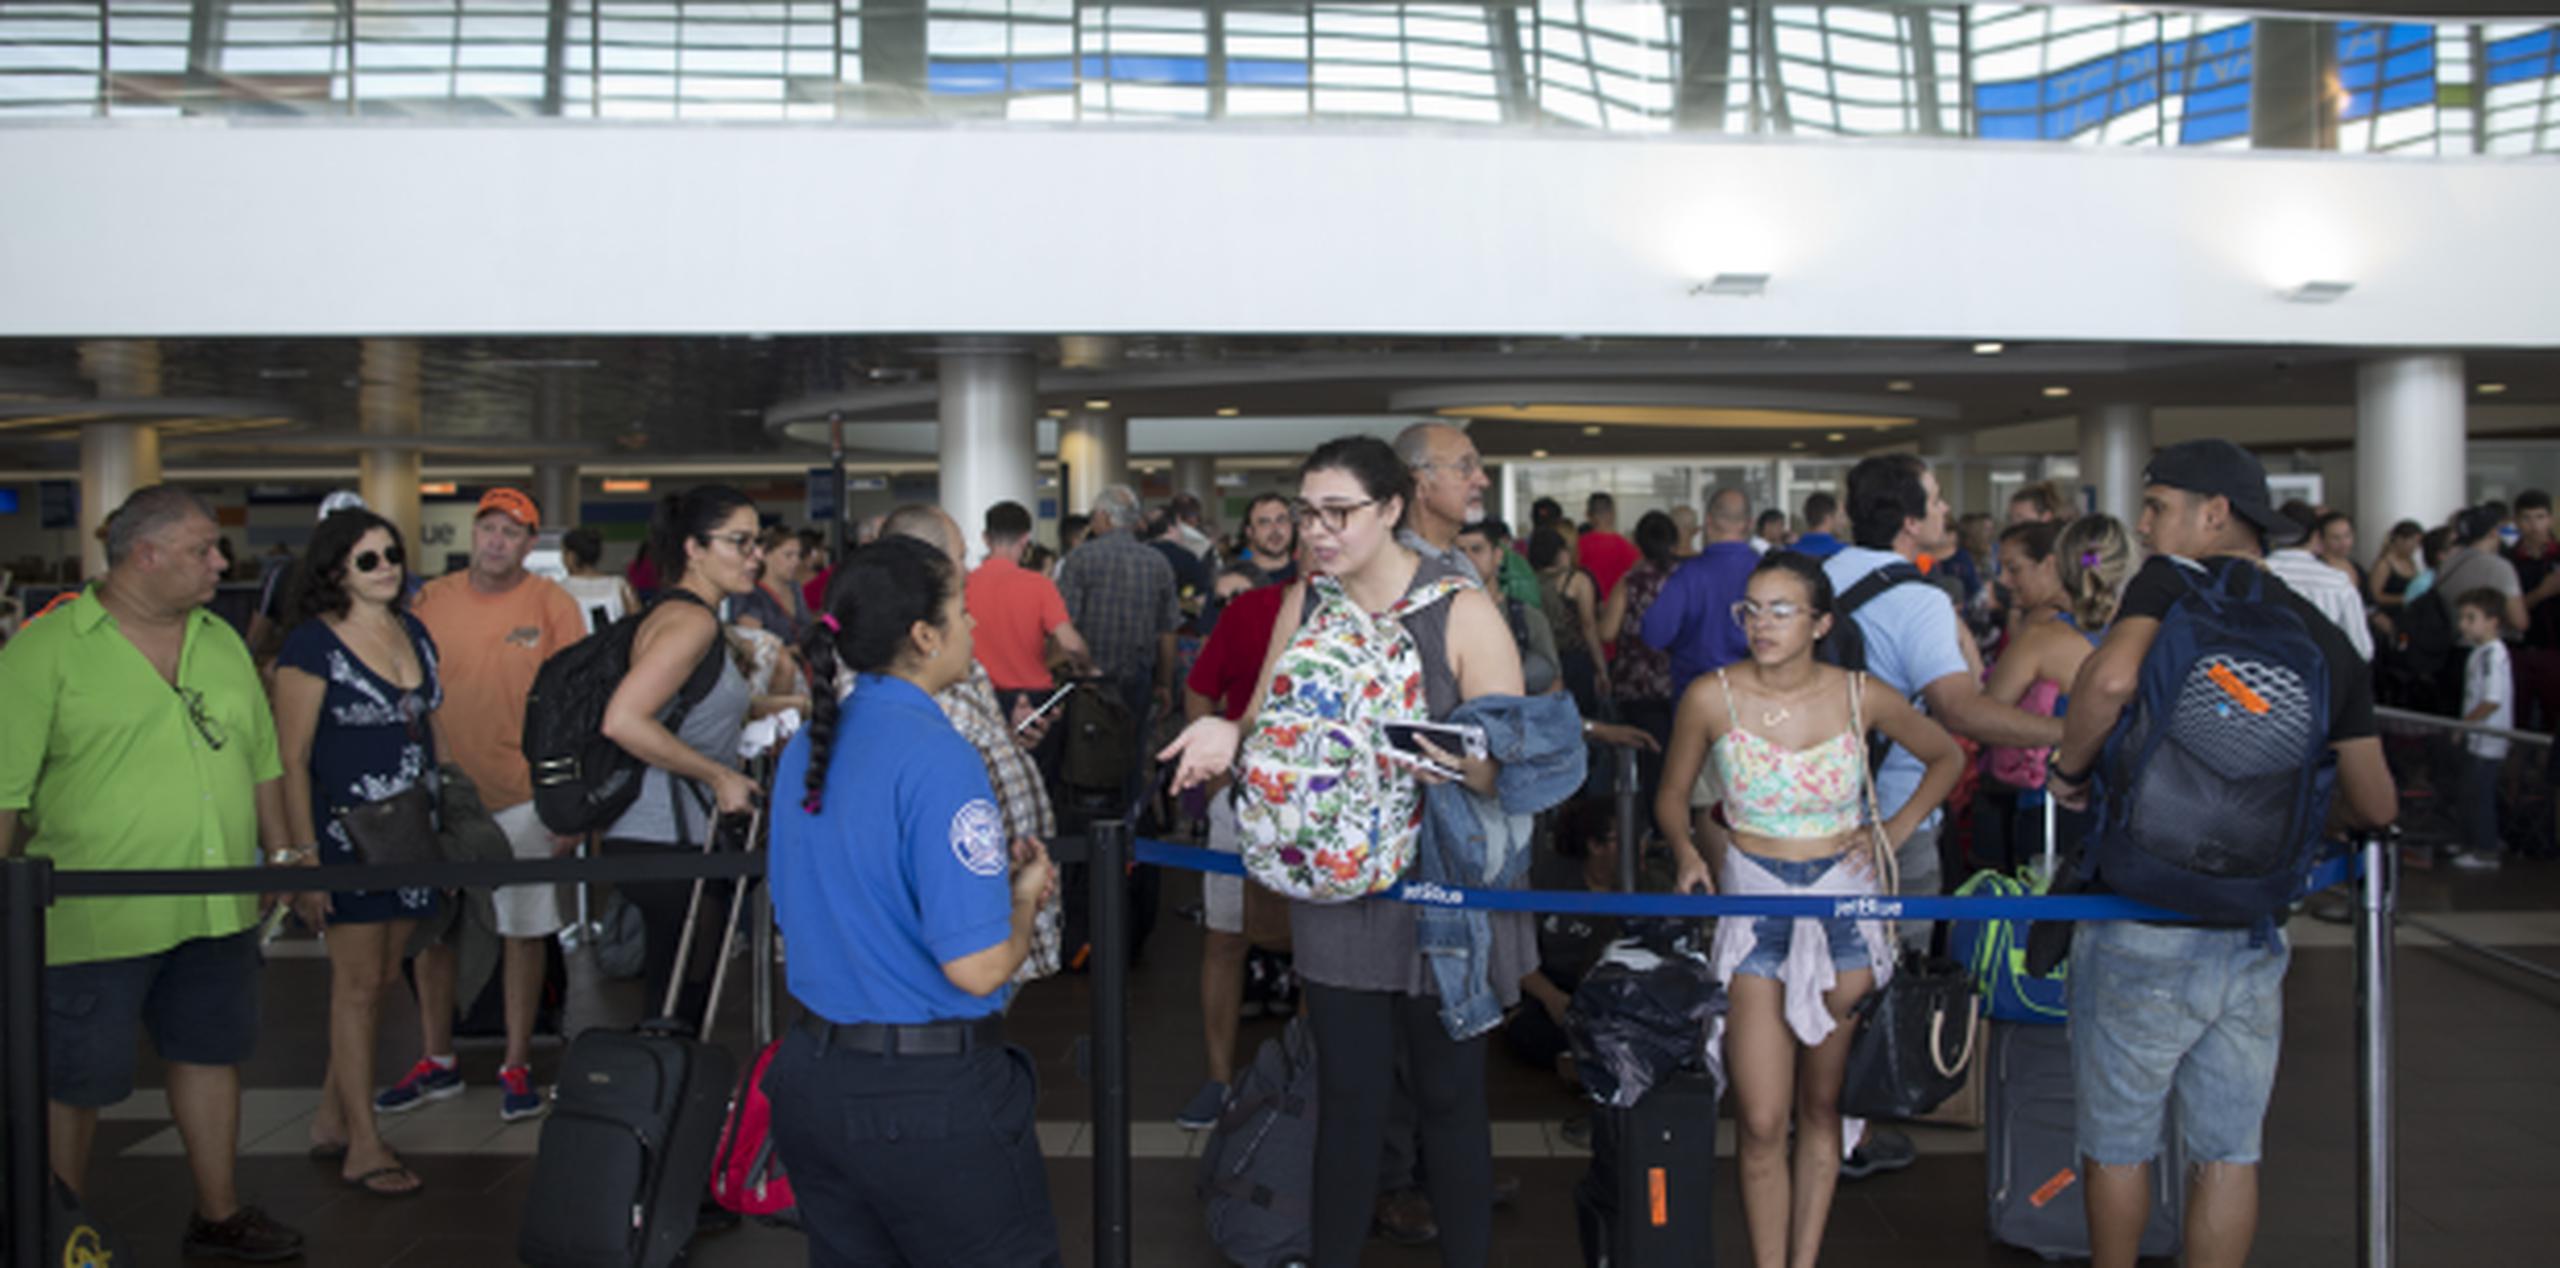 Las largas filas para tomar vuelos hacia otros estados han sido constantes en el Aeropuerto Internacional Luis Muñoz Marín desde el azote del huracán María. (xavier.araujo@gfrmedia.com)
